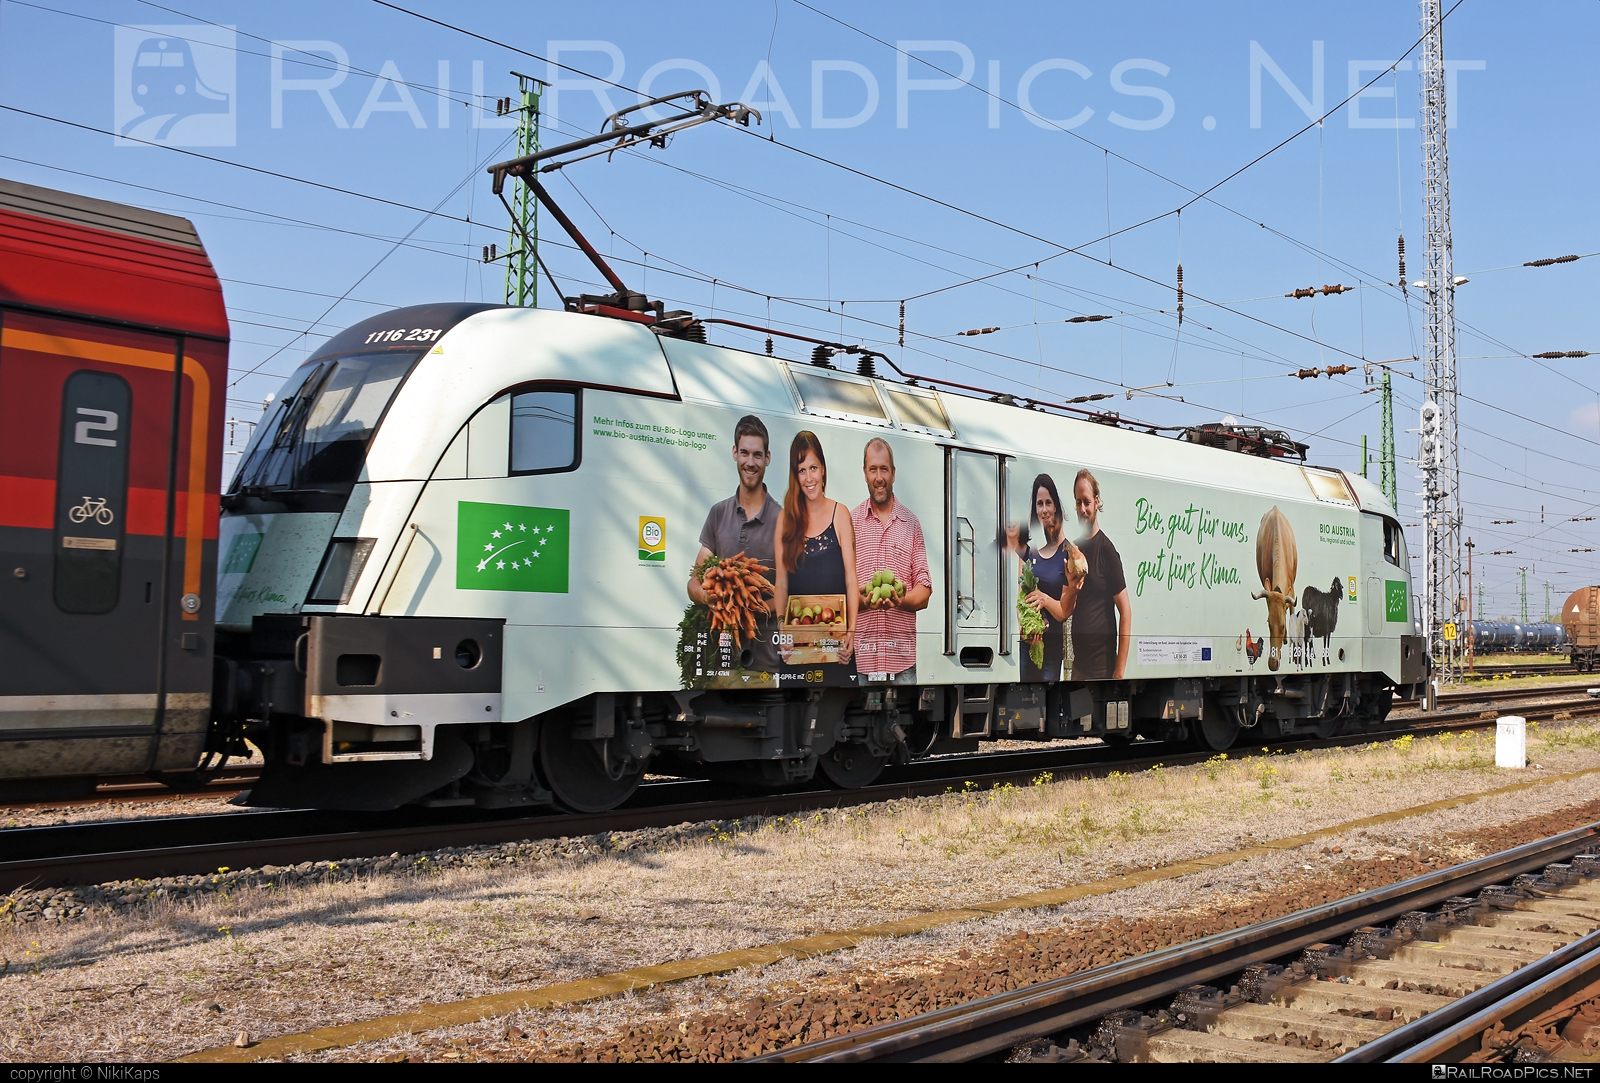 Siemens ES 64 U2 - 1116 231 operated by Österreichische Bundesbahnen #es64 #es64u2 #eurosprinter #obb #obbrailjet #osterreichischebundesbahnen #railjet #siemens #siemensEs64 #siemensEs64u2 #siemenstaurus #taurus #tauruslocomotive